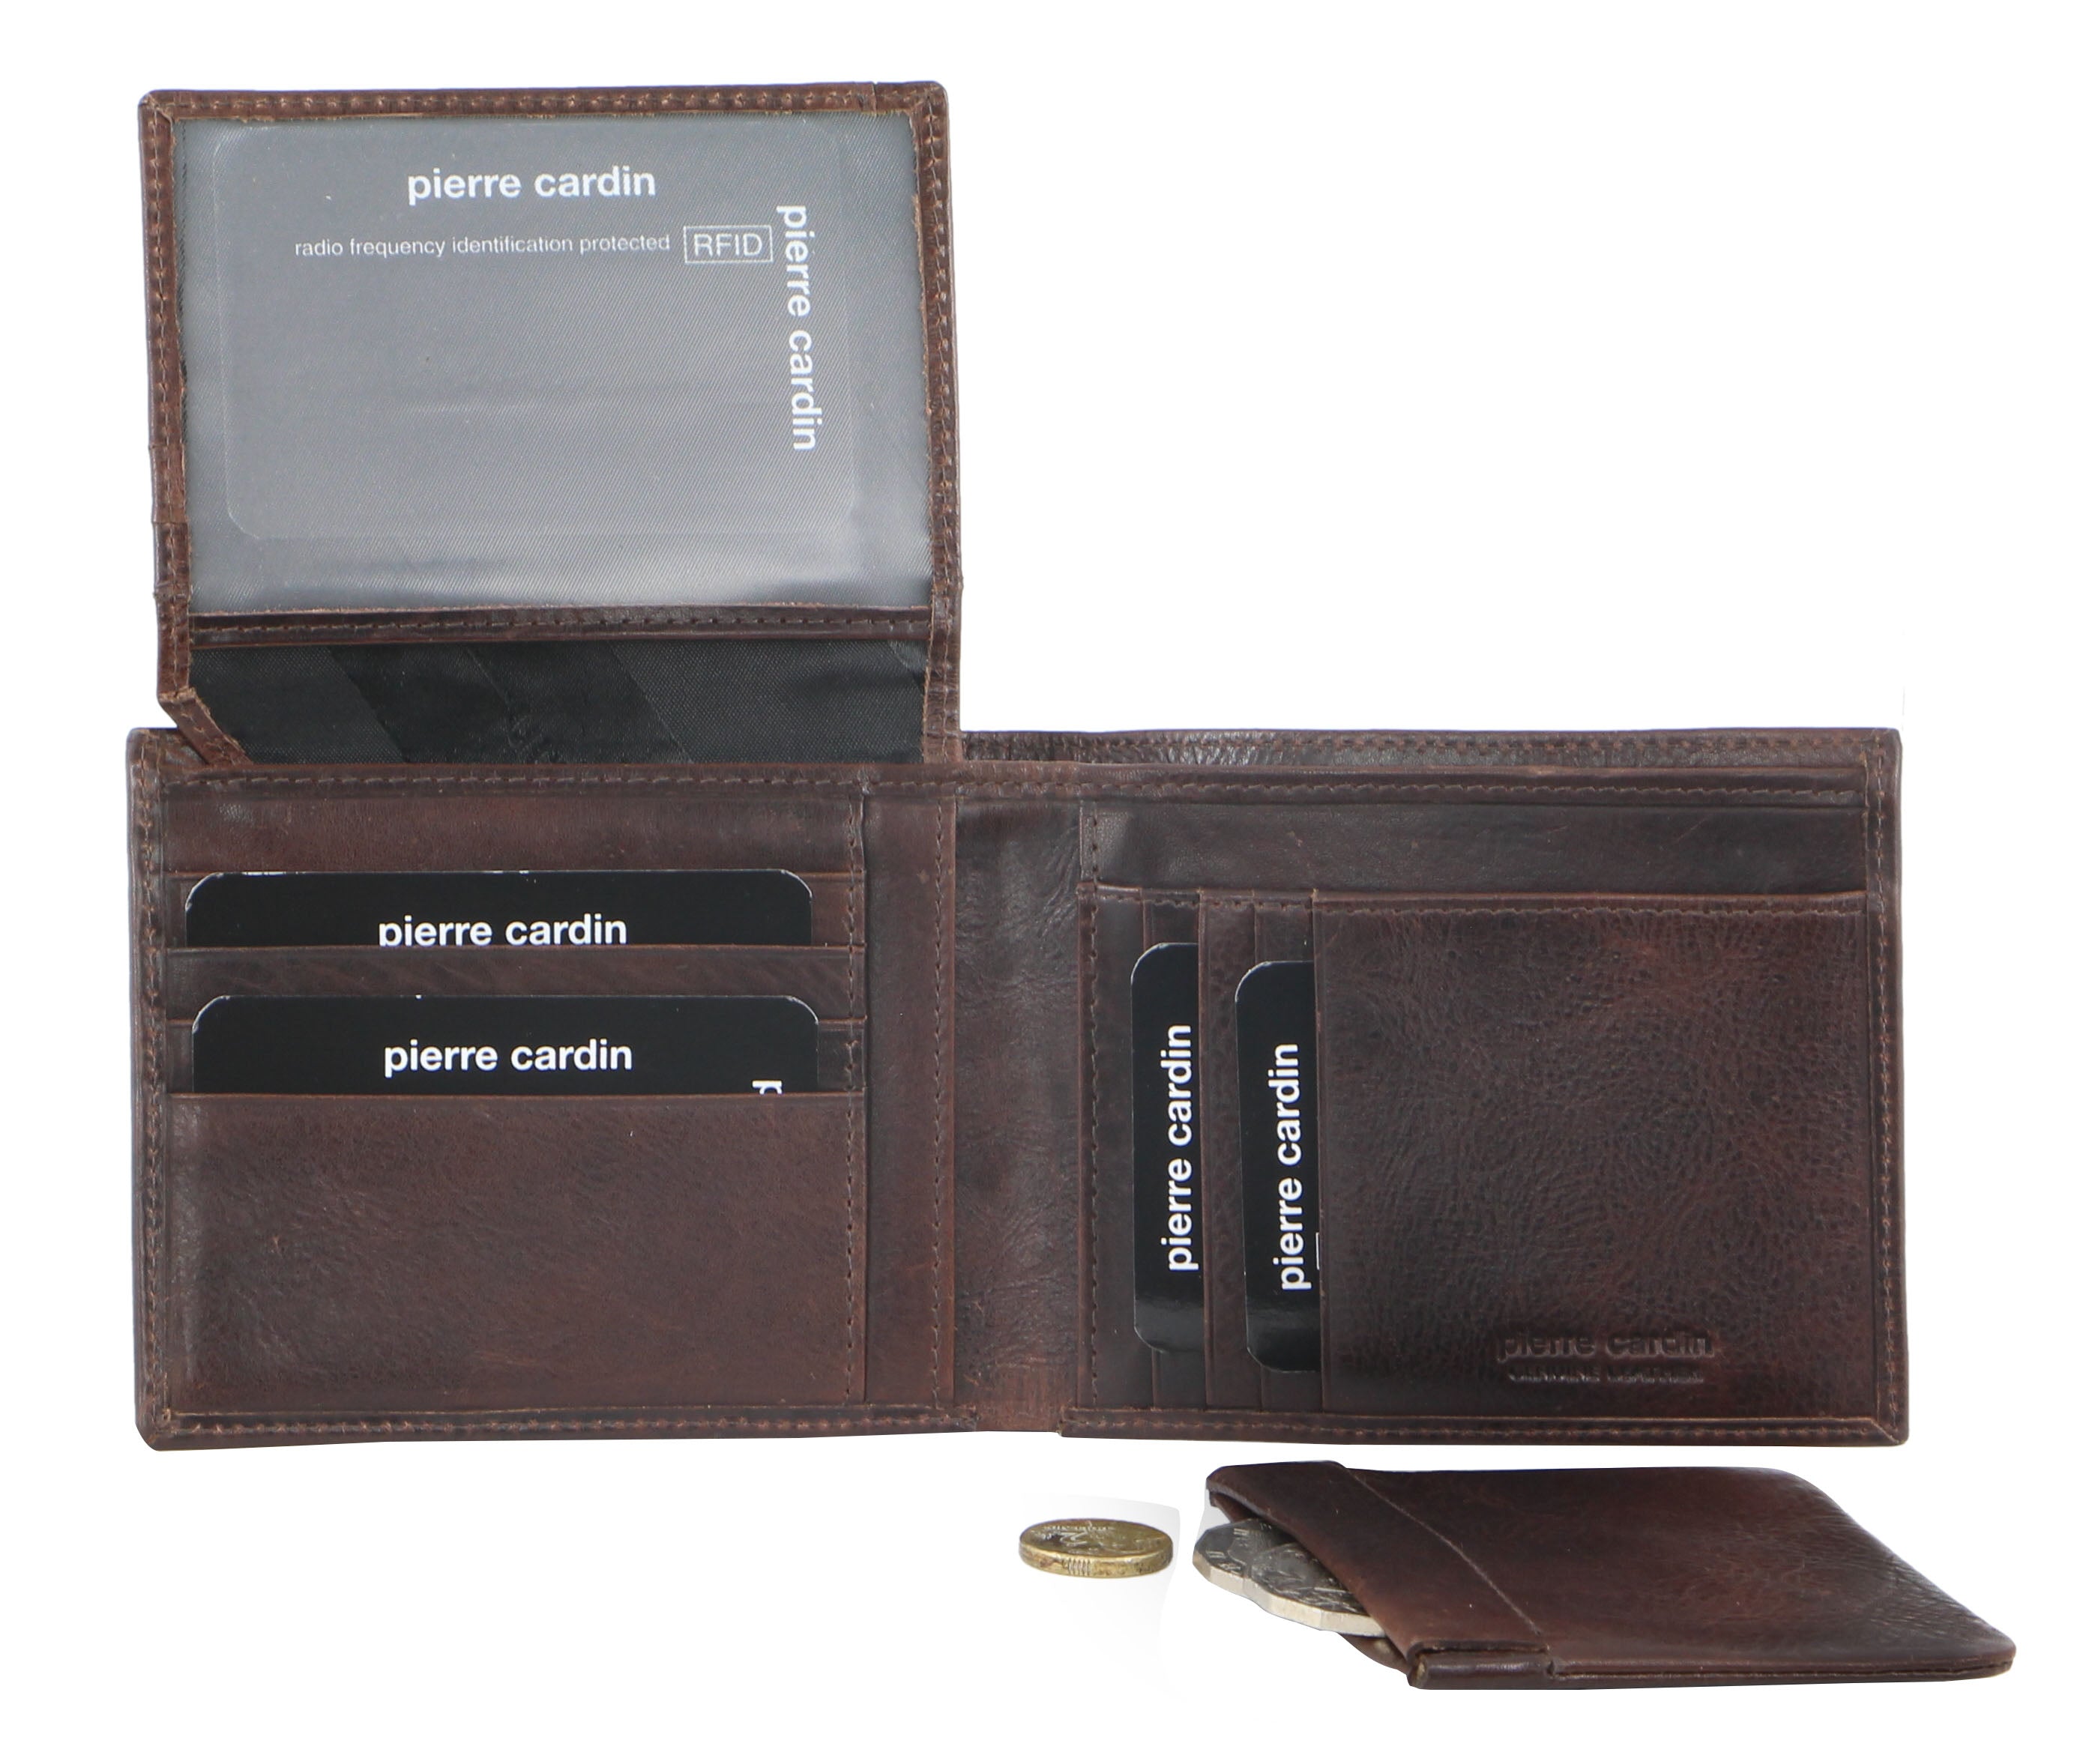 Pierre Cardin Italian Leather Men's Wallet/Card Holder in Chocolate